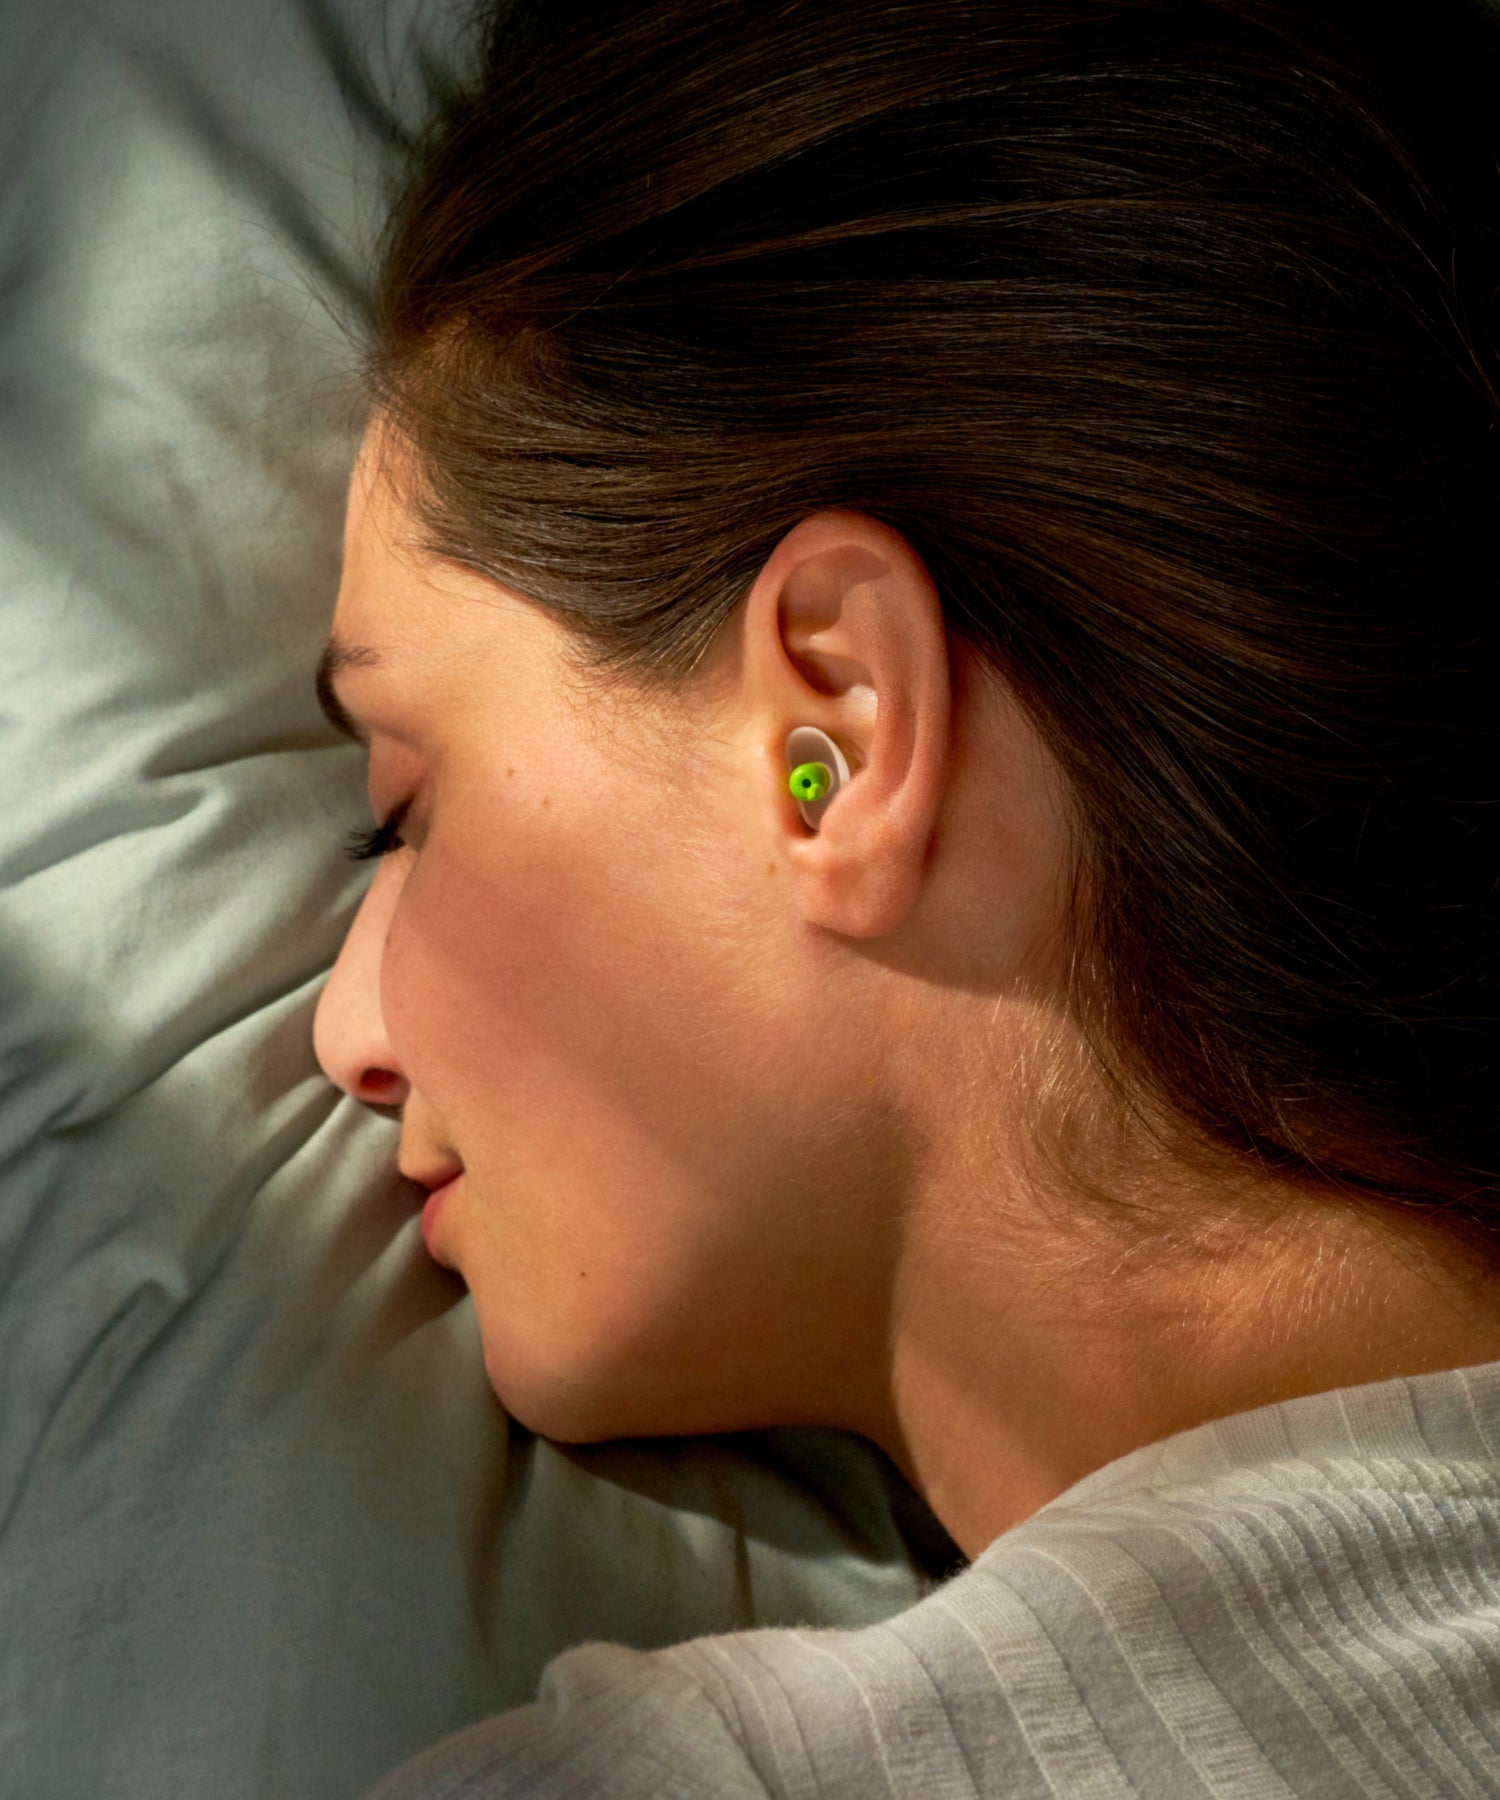 alpine sleepsoft sleep earplugs use #pdp_always